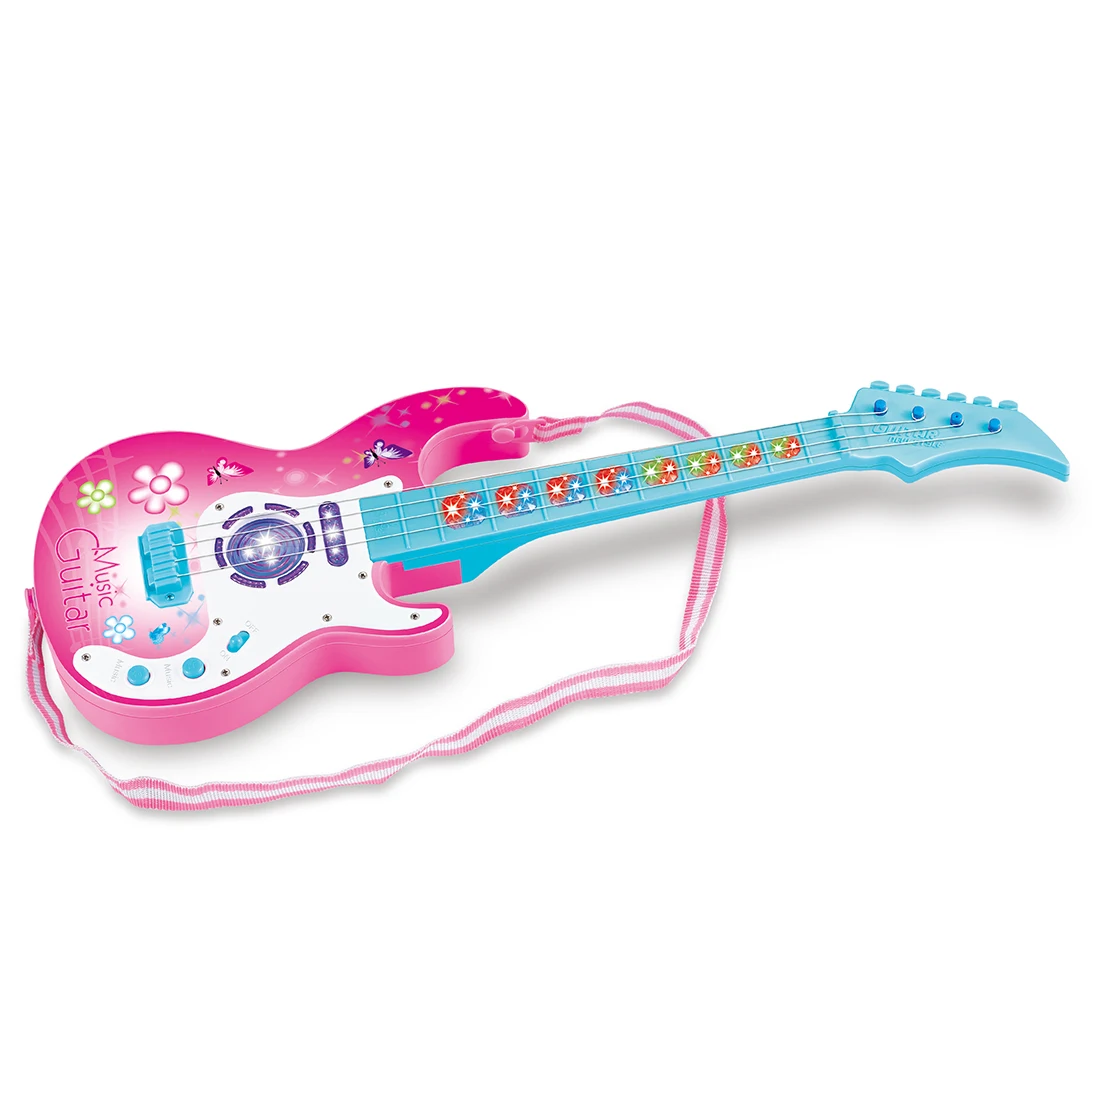 Моделирование Милая 4 струнная музыкальная гитара дети музыкальные инструменты обучающая игрушка 909B